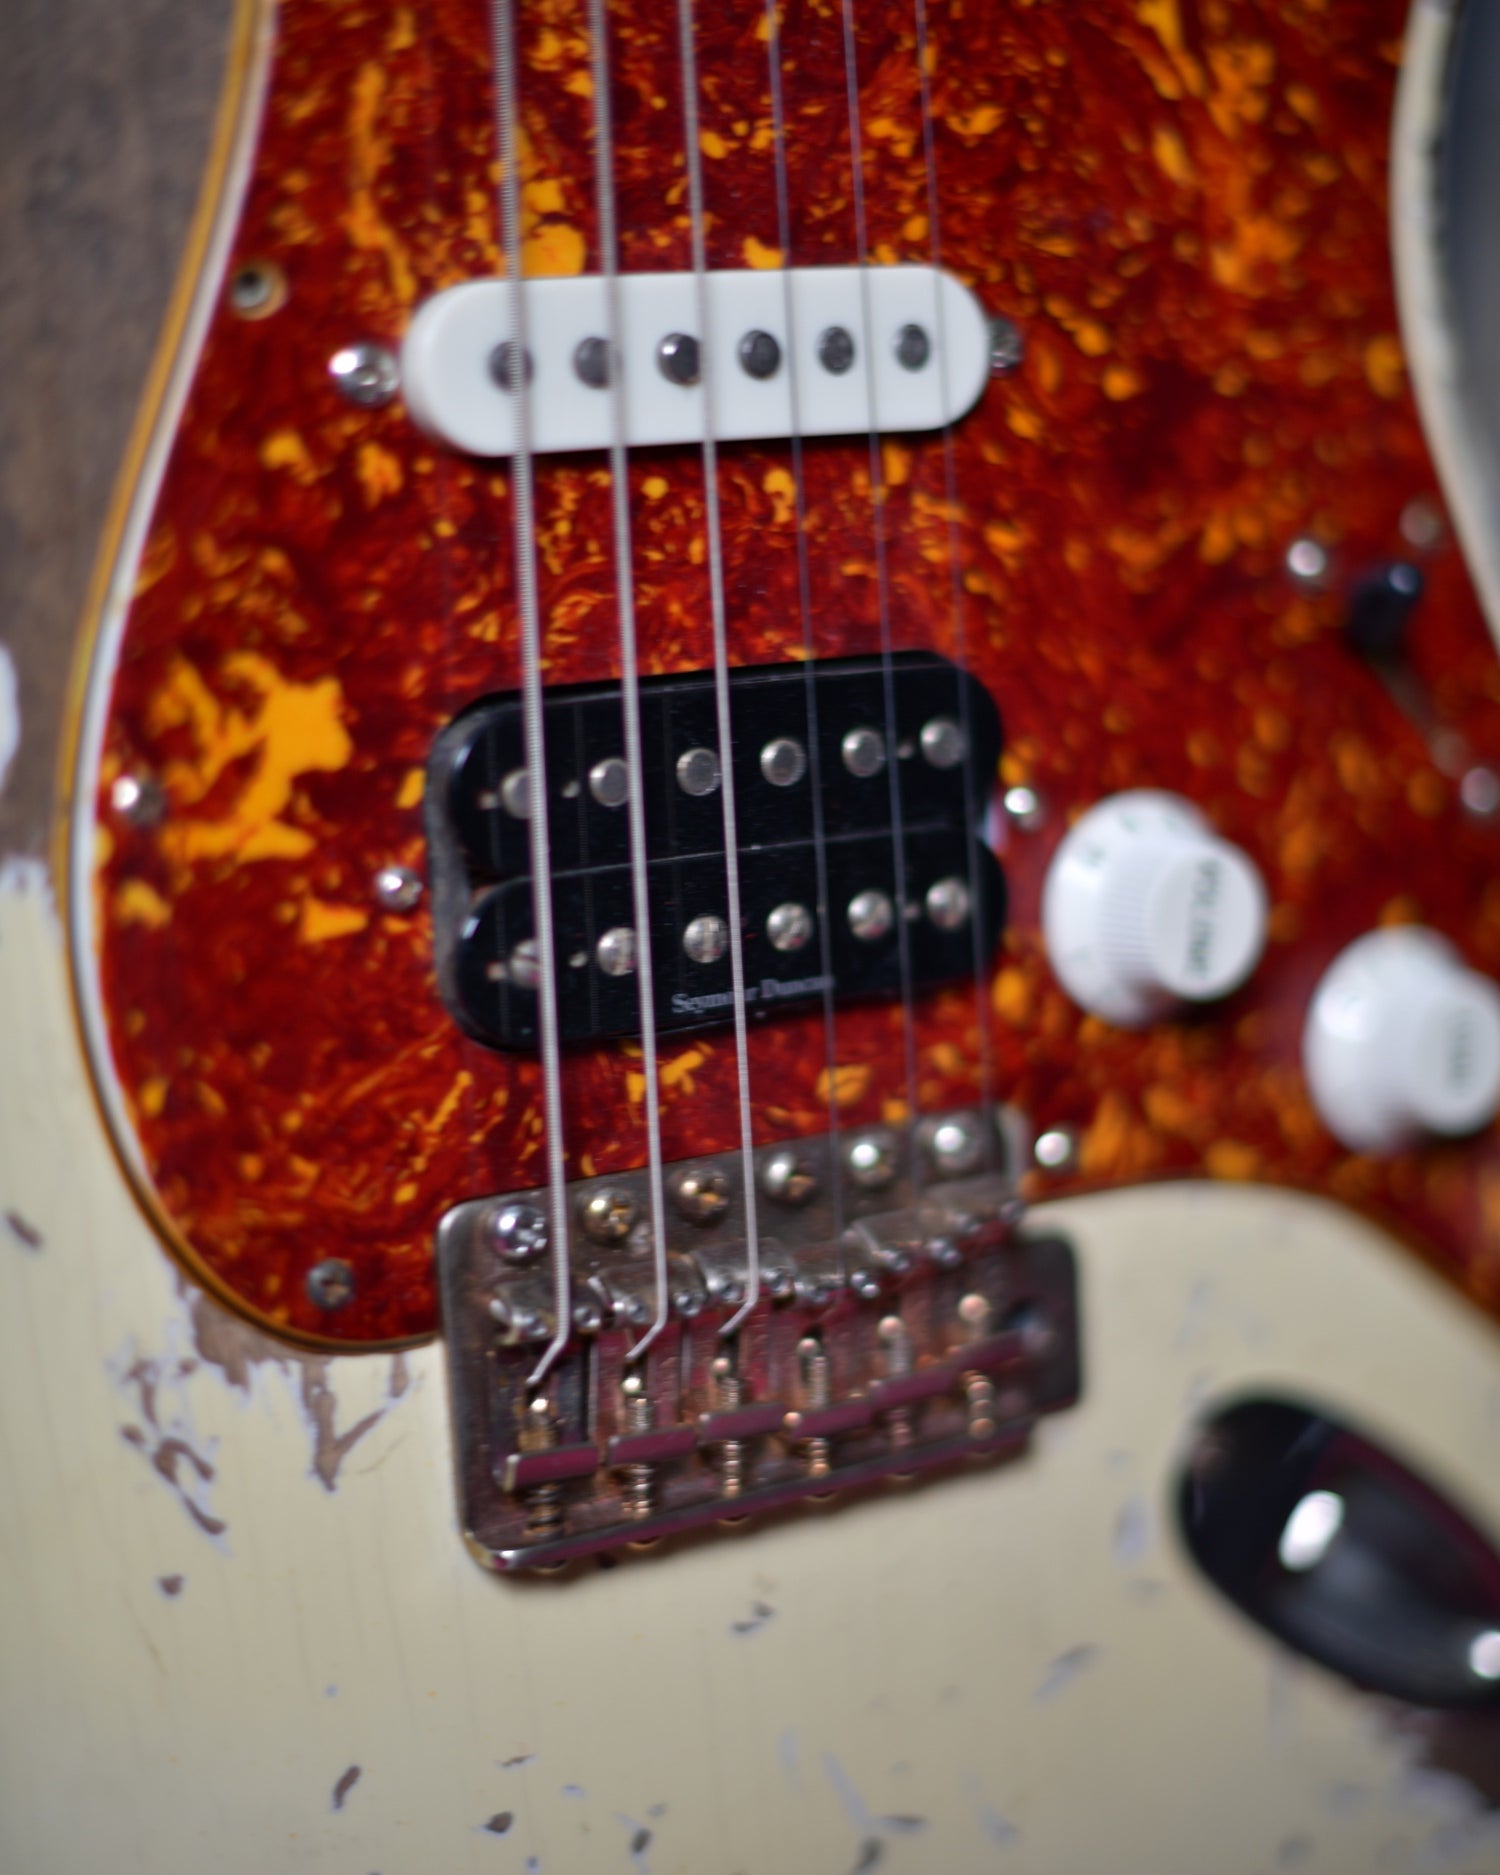 Fender Stratocaster AVRI 62 Ultra Relic Vintage White HSS